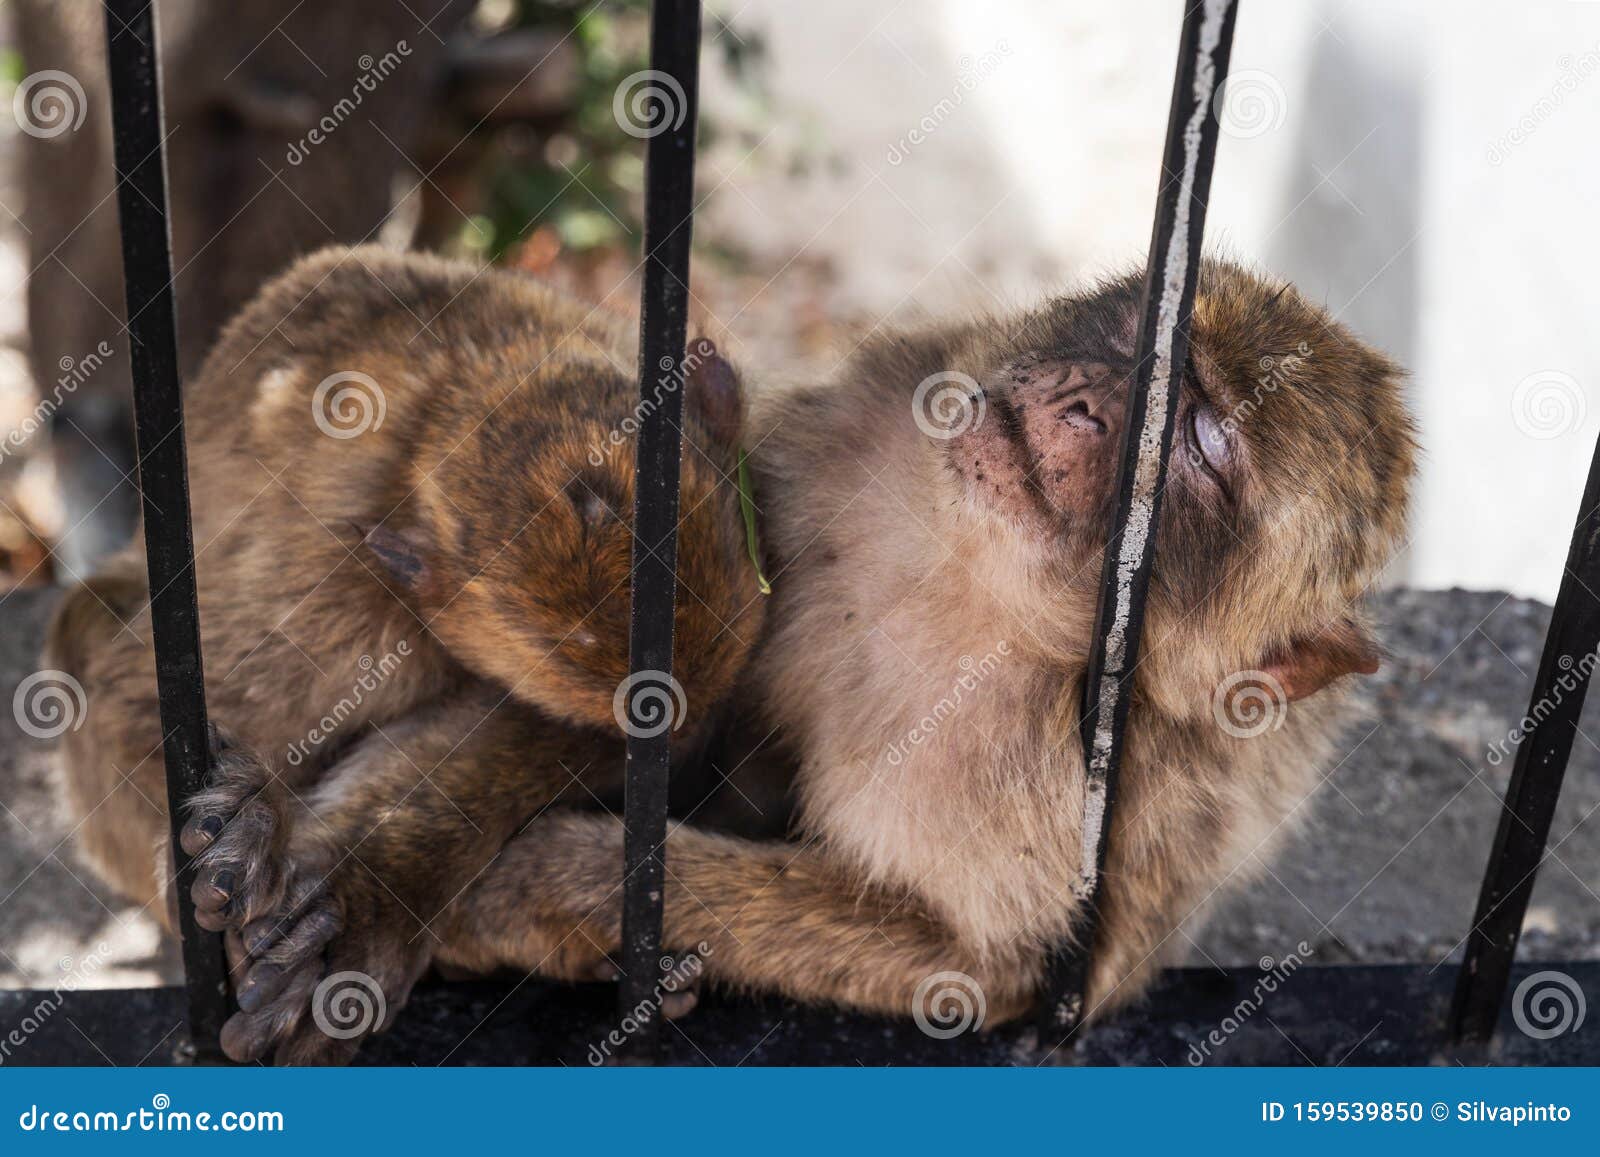 cutebaby monkies sleeping